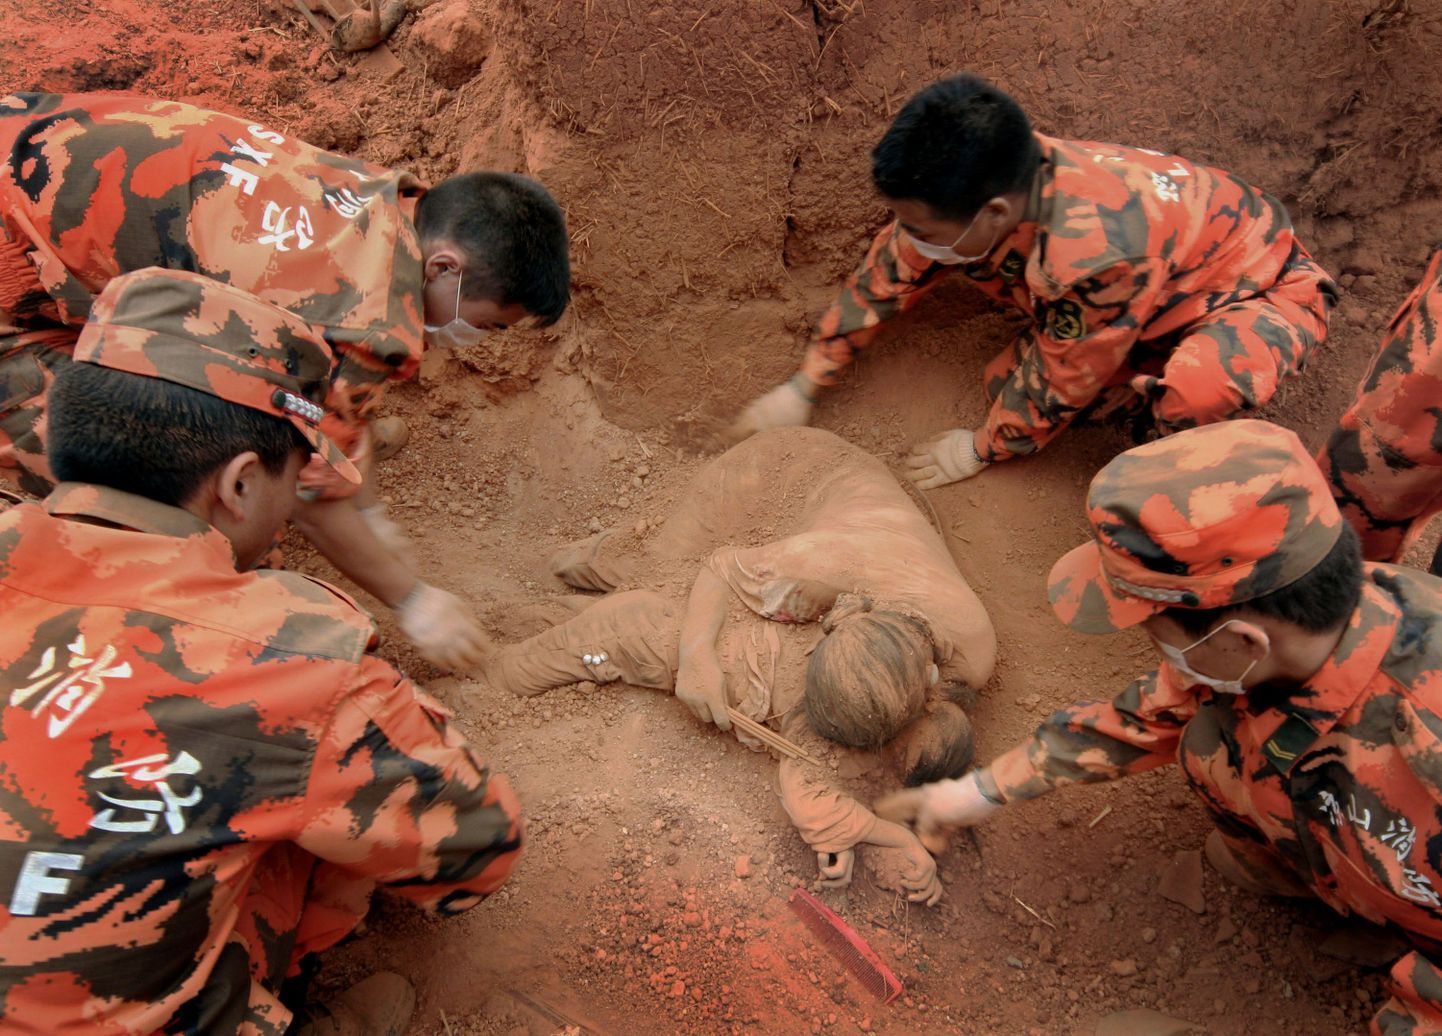 Hiina päästetöötajad leidsid majarusude alt naise surnukeha, kes näis olevat oma last viimase hingetõmbeni kaitsnud